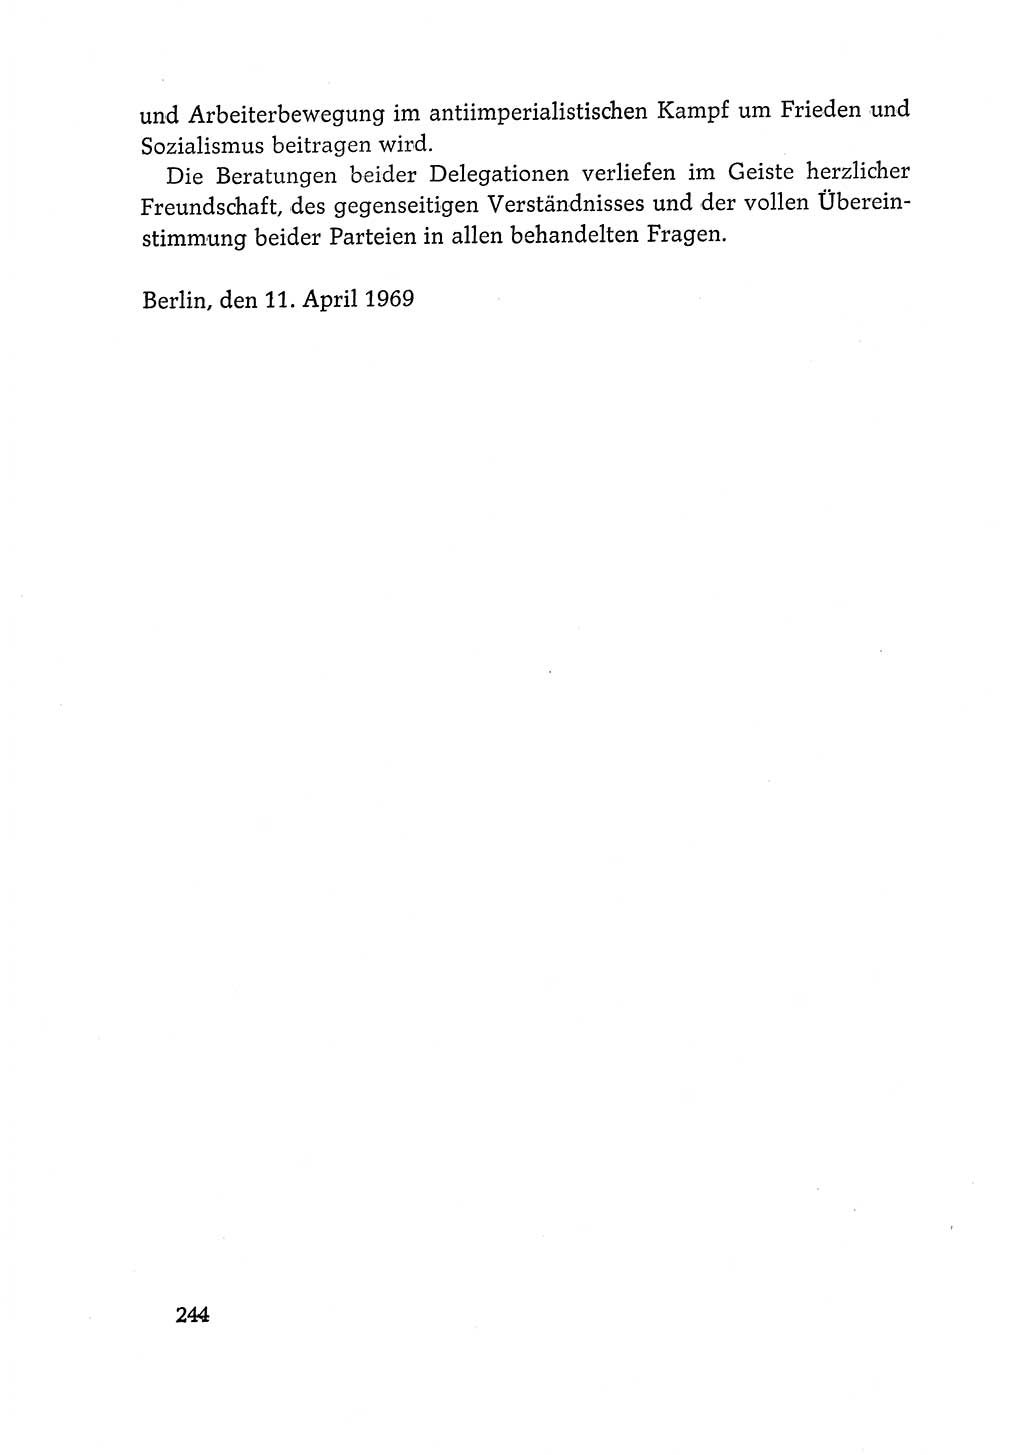 Dokumente der Sozialistischen Einheitspartei Deutschlands (SED) [Deutsche Demokratische Republik (DDR)] 1968-1969, Seite 244 (Dok. SED DDR 1968-1969, S. 244)